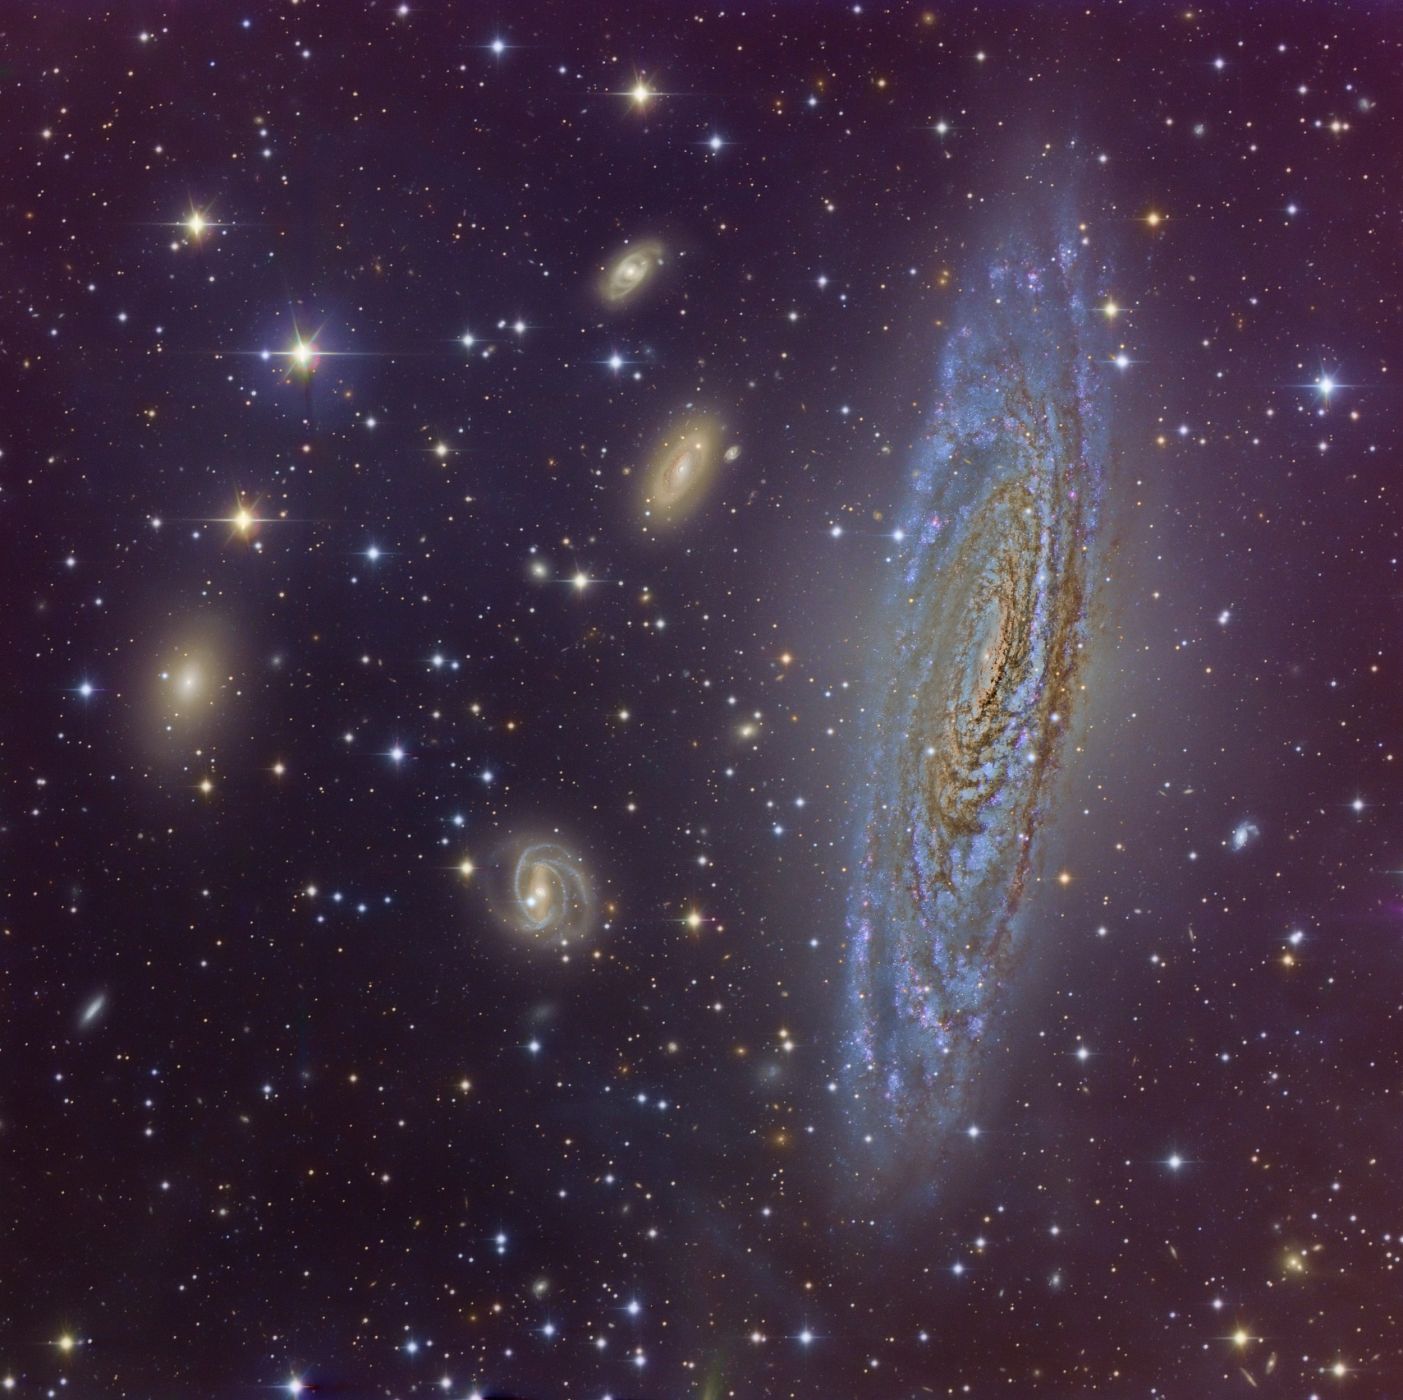 Imagen de la galaxia NGC 7331, tomada desde el Observatorio de Calar Alto.